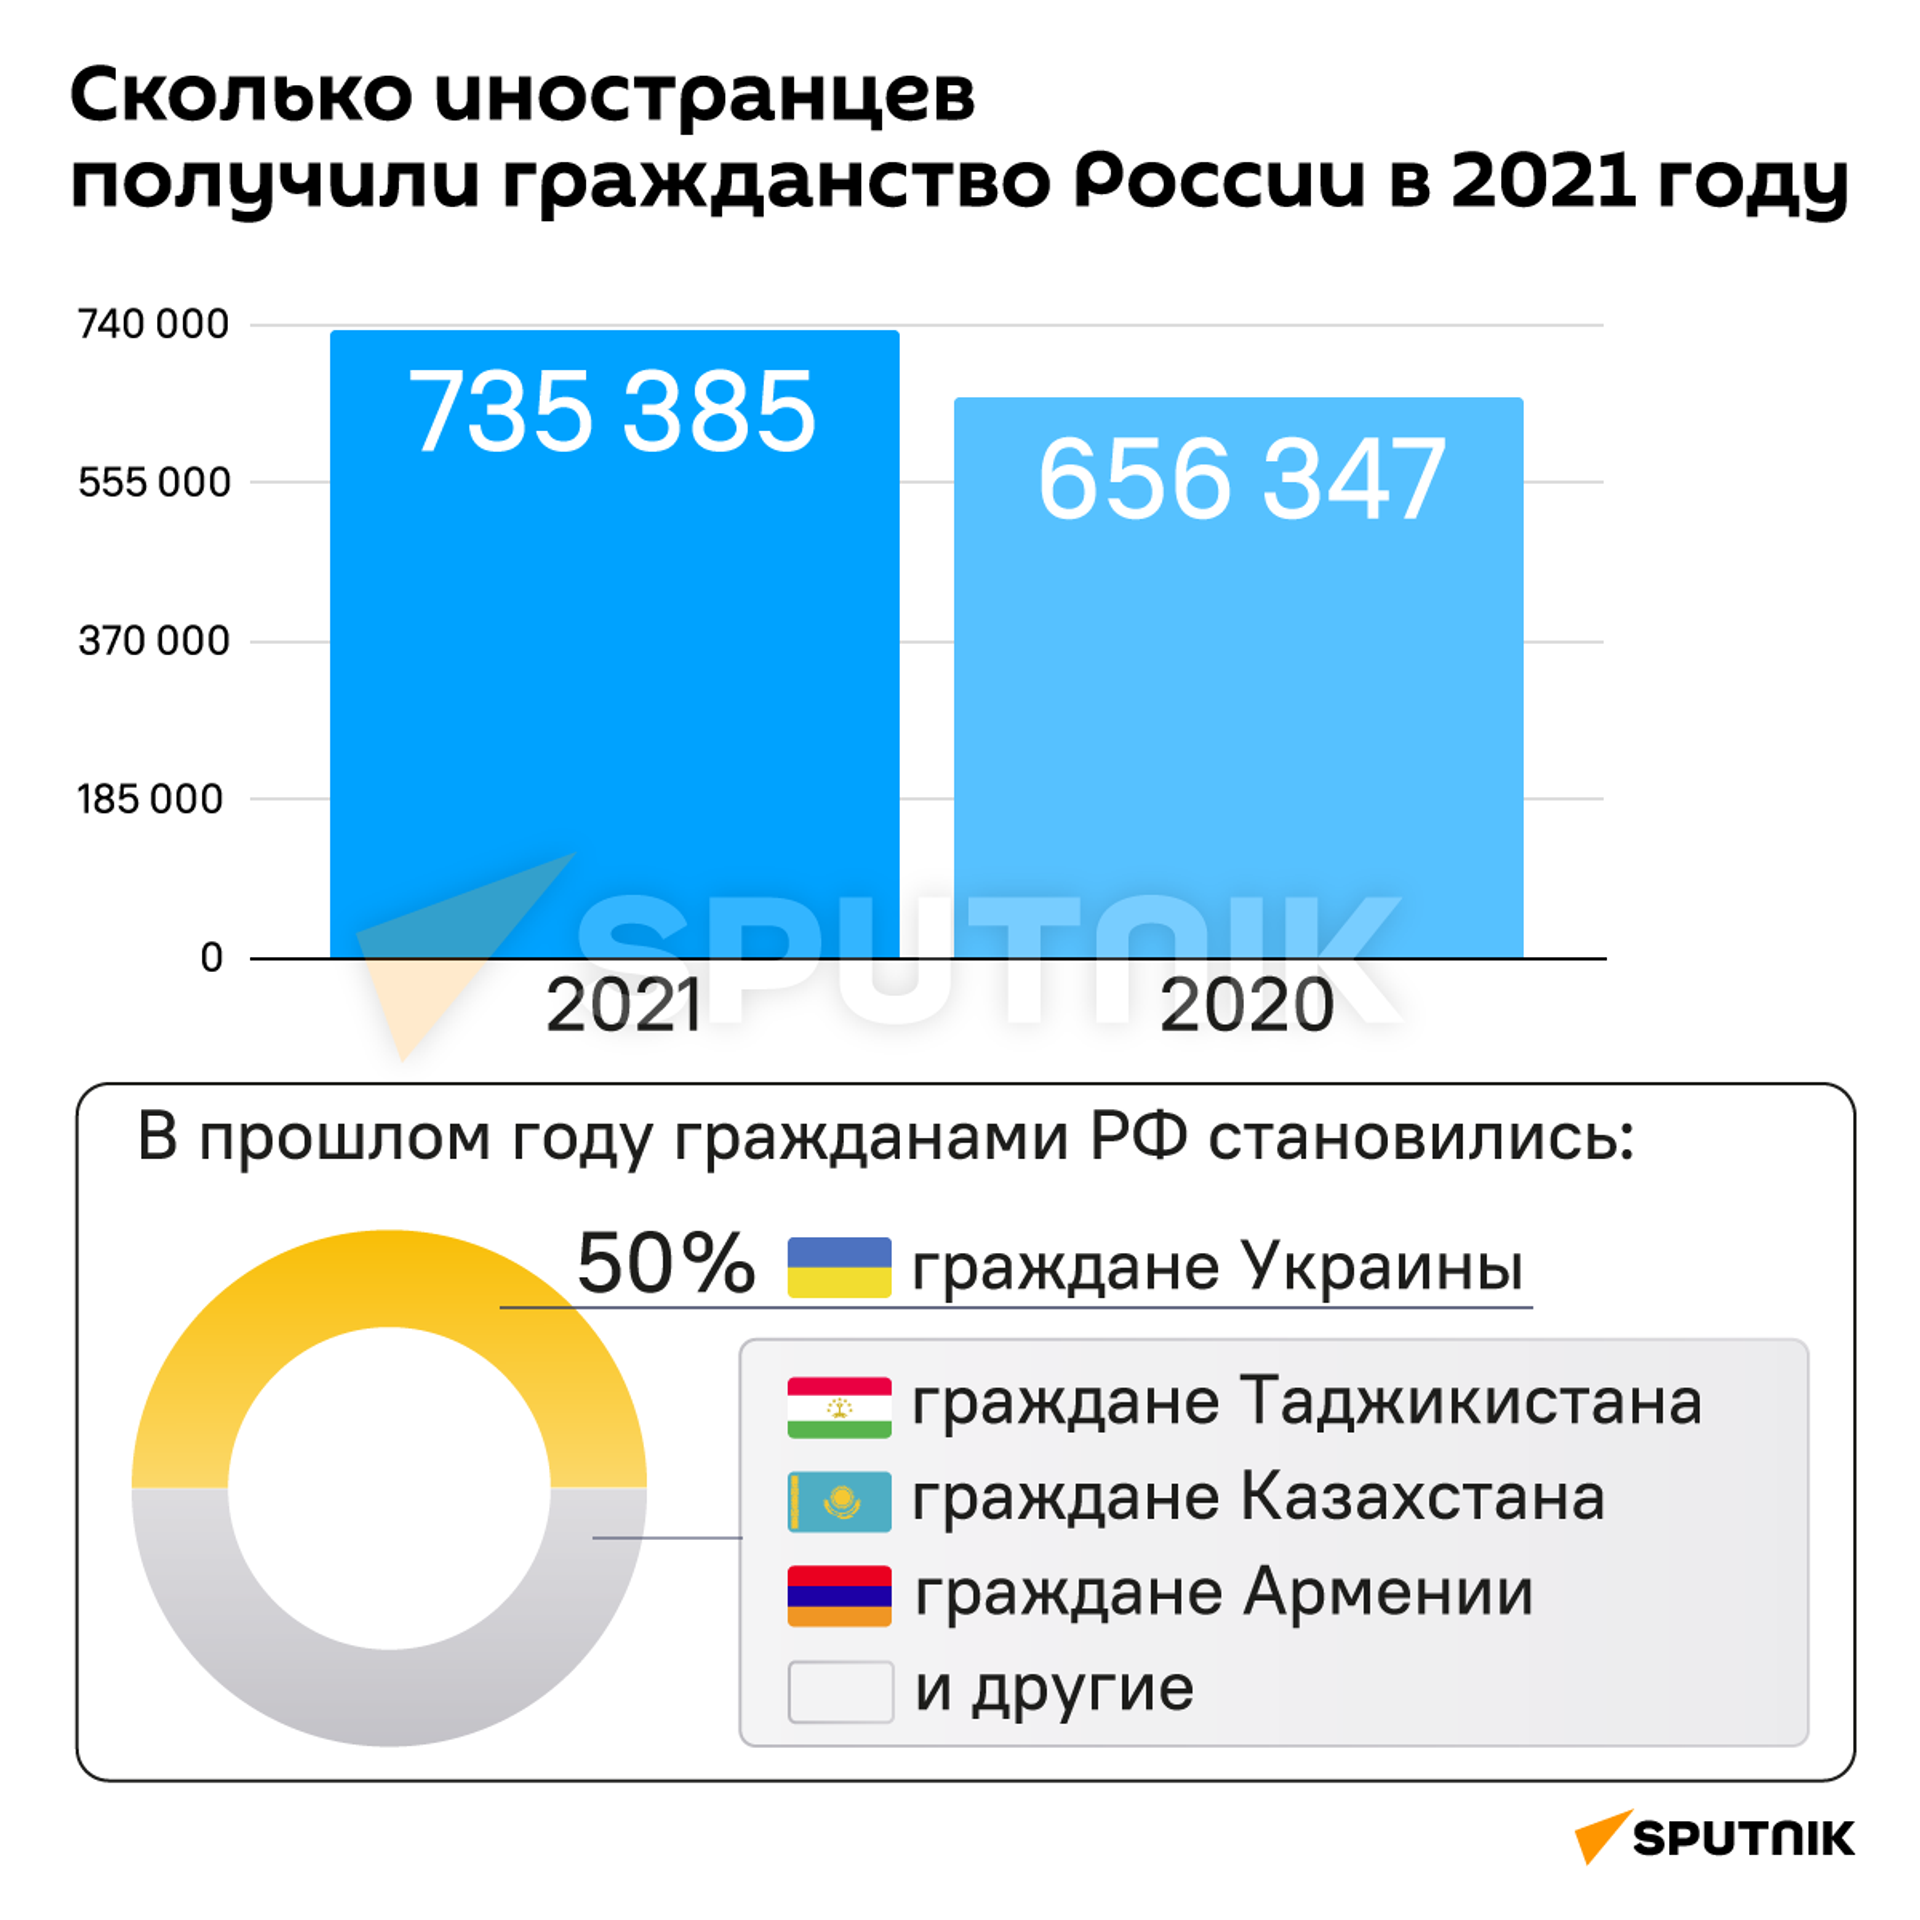 Инфографика: Сколько иностранцев получили гражданство России в 2021 году  - Sputnik Узбекистан, 1920, 27.01.2022